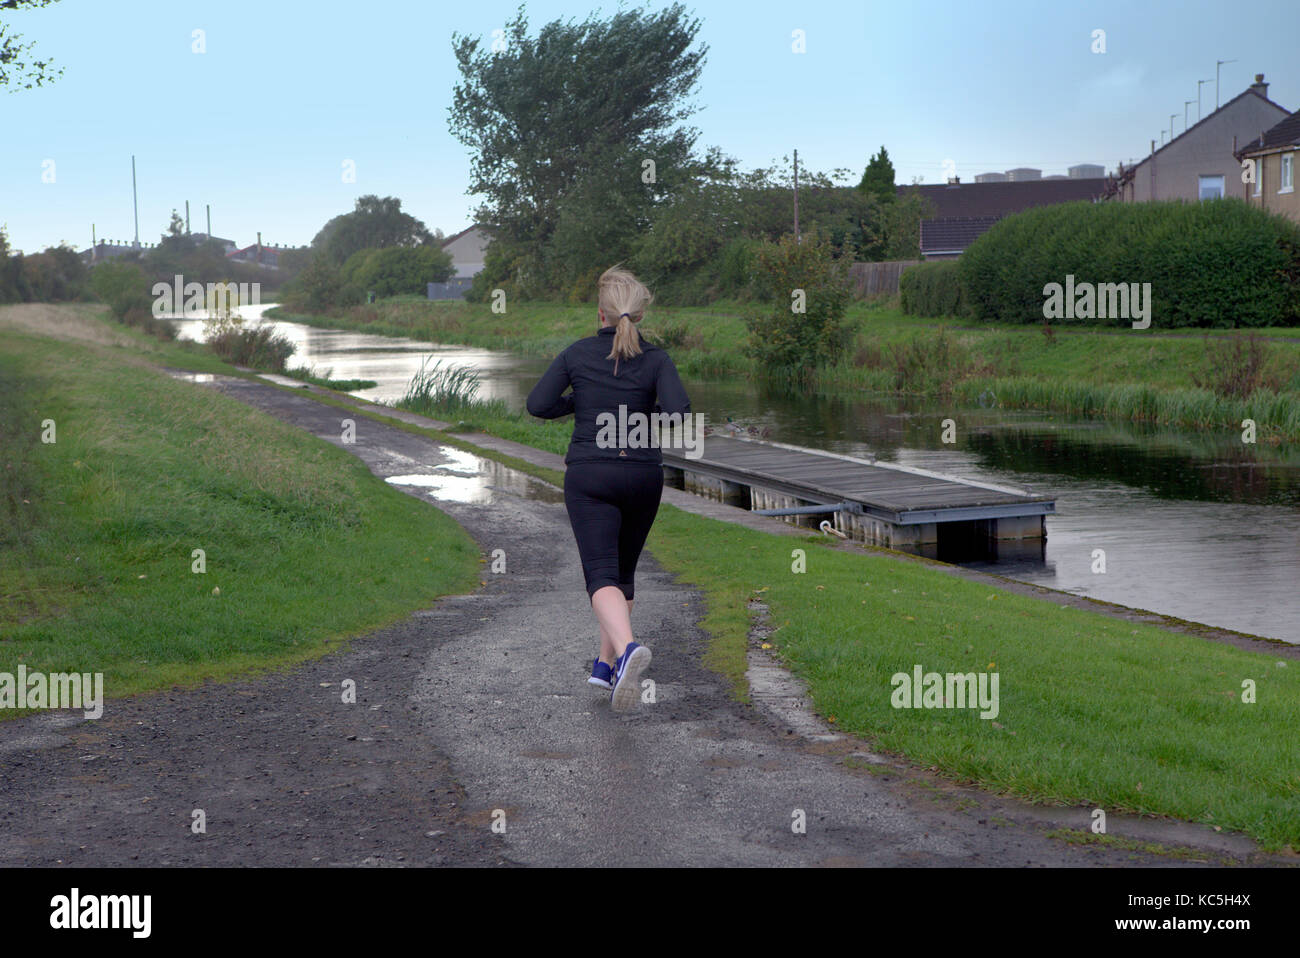 Solo weiblich Frau runner Jogger her läuft und Clyde Kanal blond kaukasischen Stockfoto